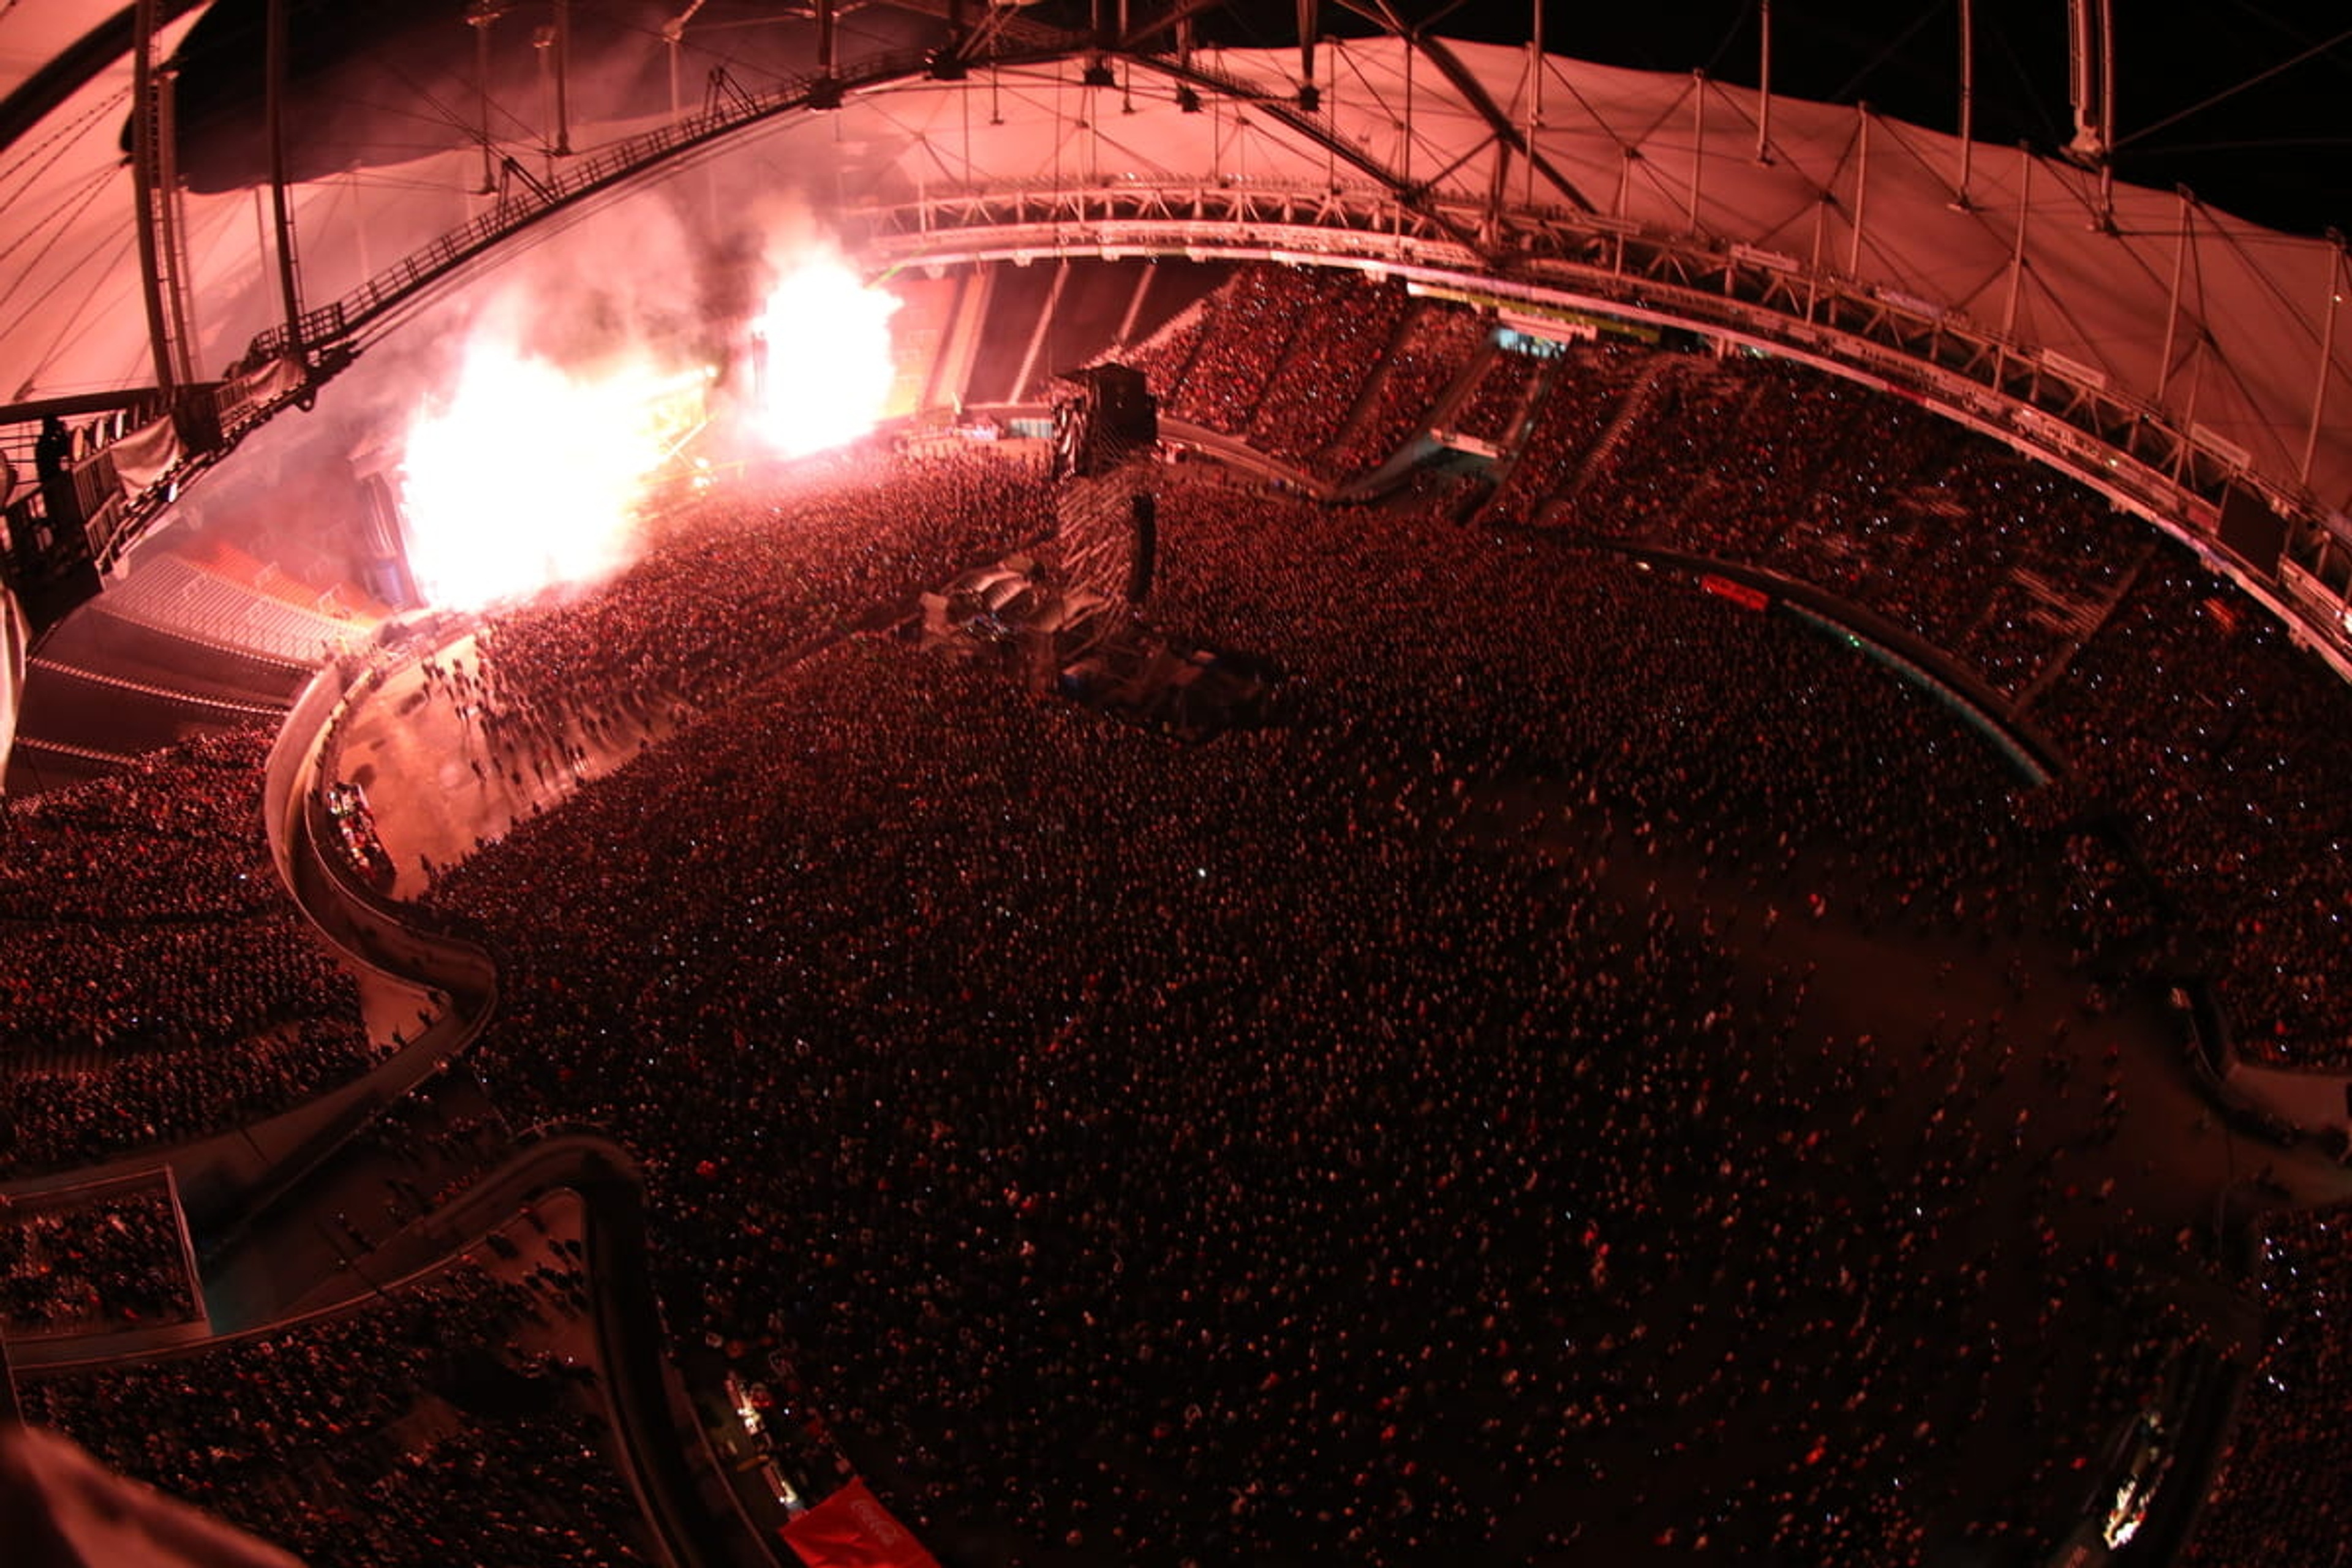 Paul's 'One On One' tour at the Estadio Unico de la Plata, Buenos Aires